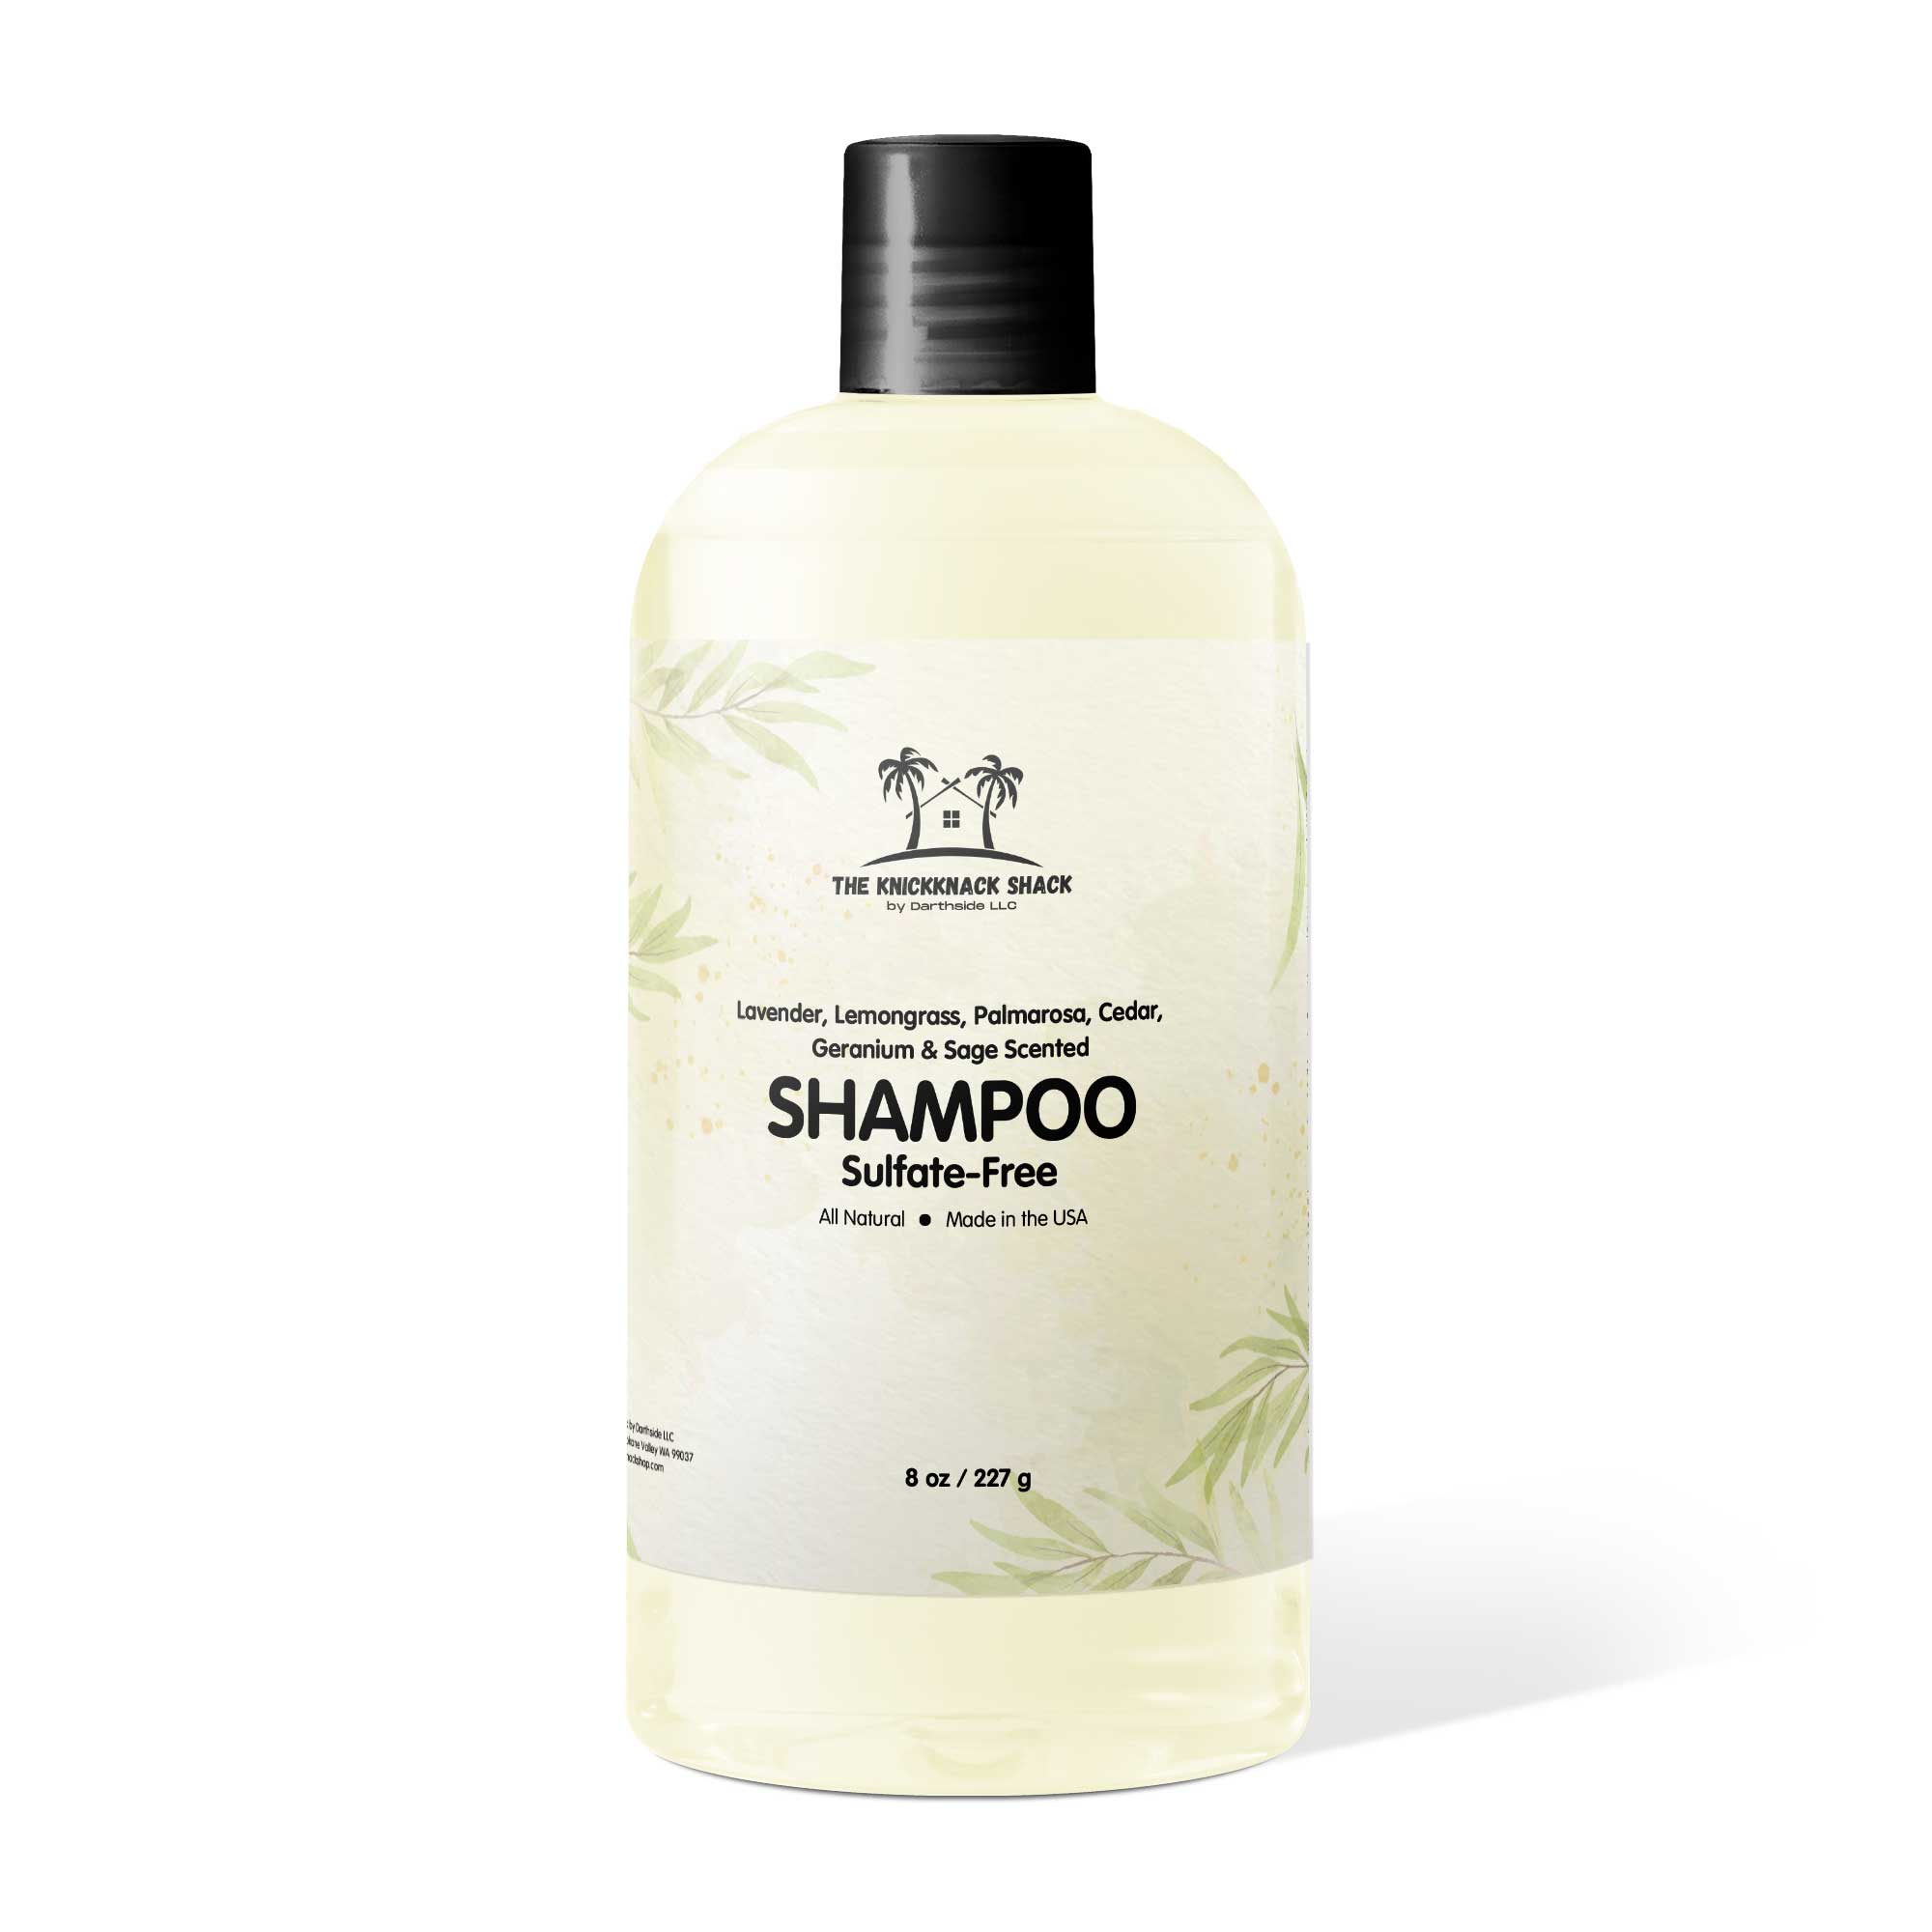 Lavender, Lemongrass, Palmarosa, Cedar, Geranium & Sage Scented Sulfate-Free Shampoo